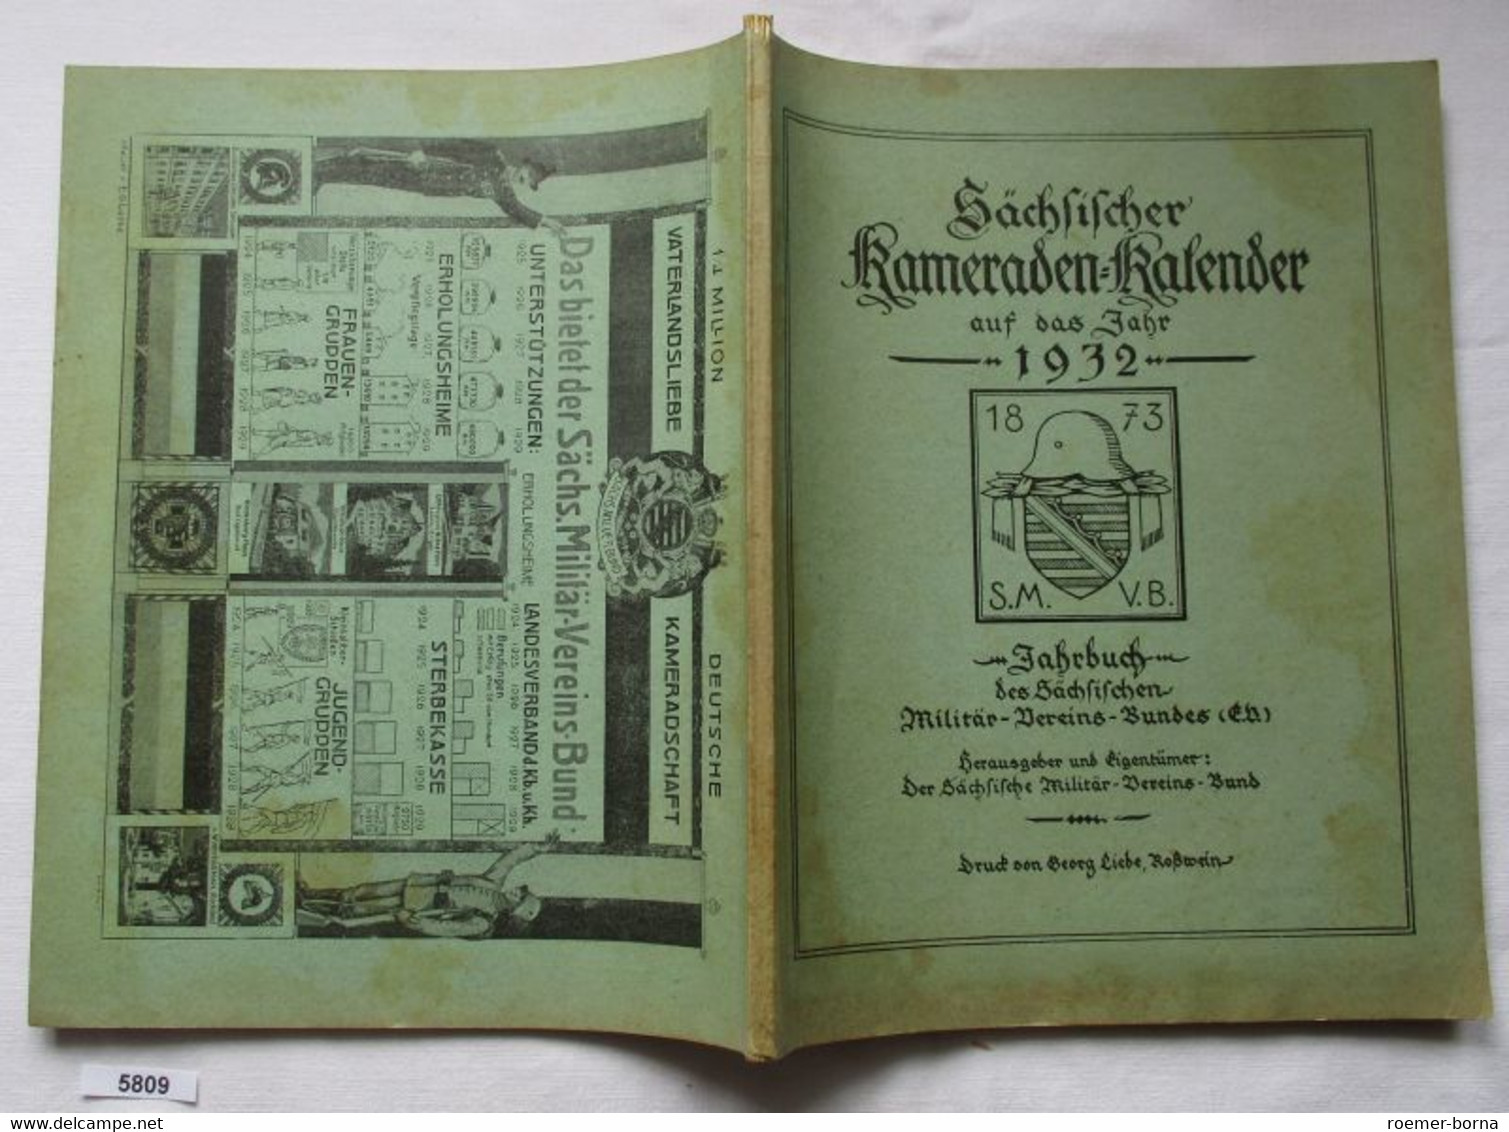 Sächsischer Kameraden-Kalender Auf Das Jahr 1932 - Jahrbuch Des Sächsischen Militär-Vereins-Bundes (E.V.) - Kalender